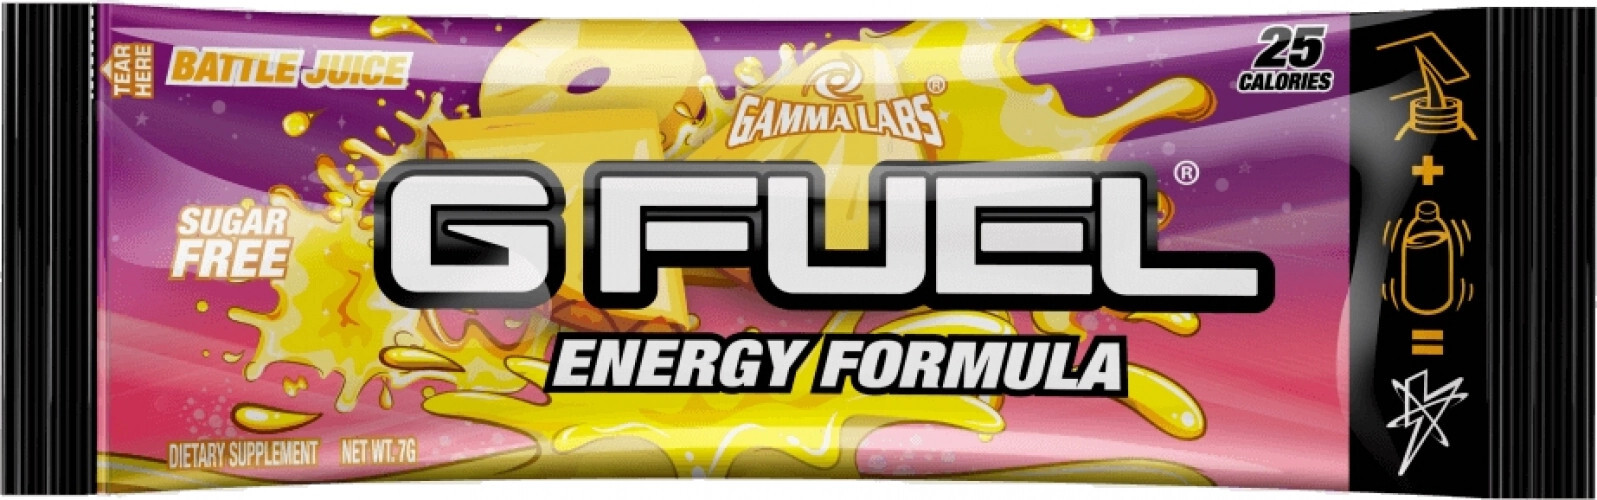 GFuel GFuel Energy Formula - Battle Juice Sample